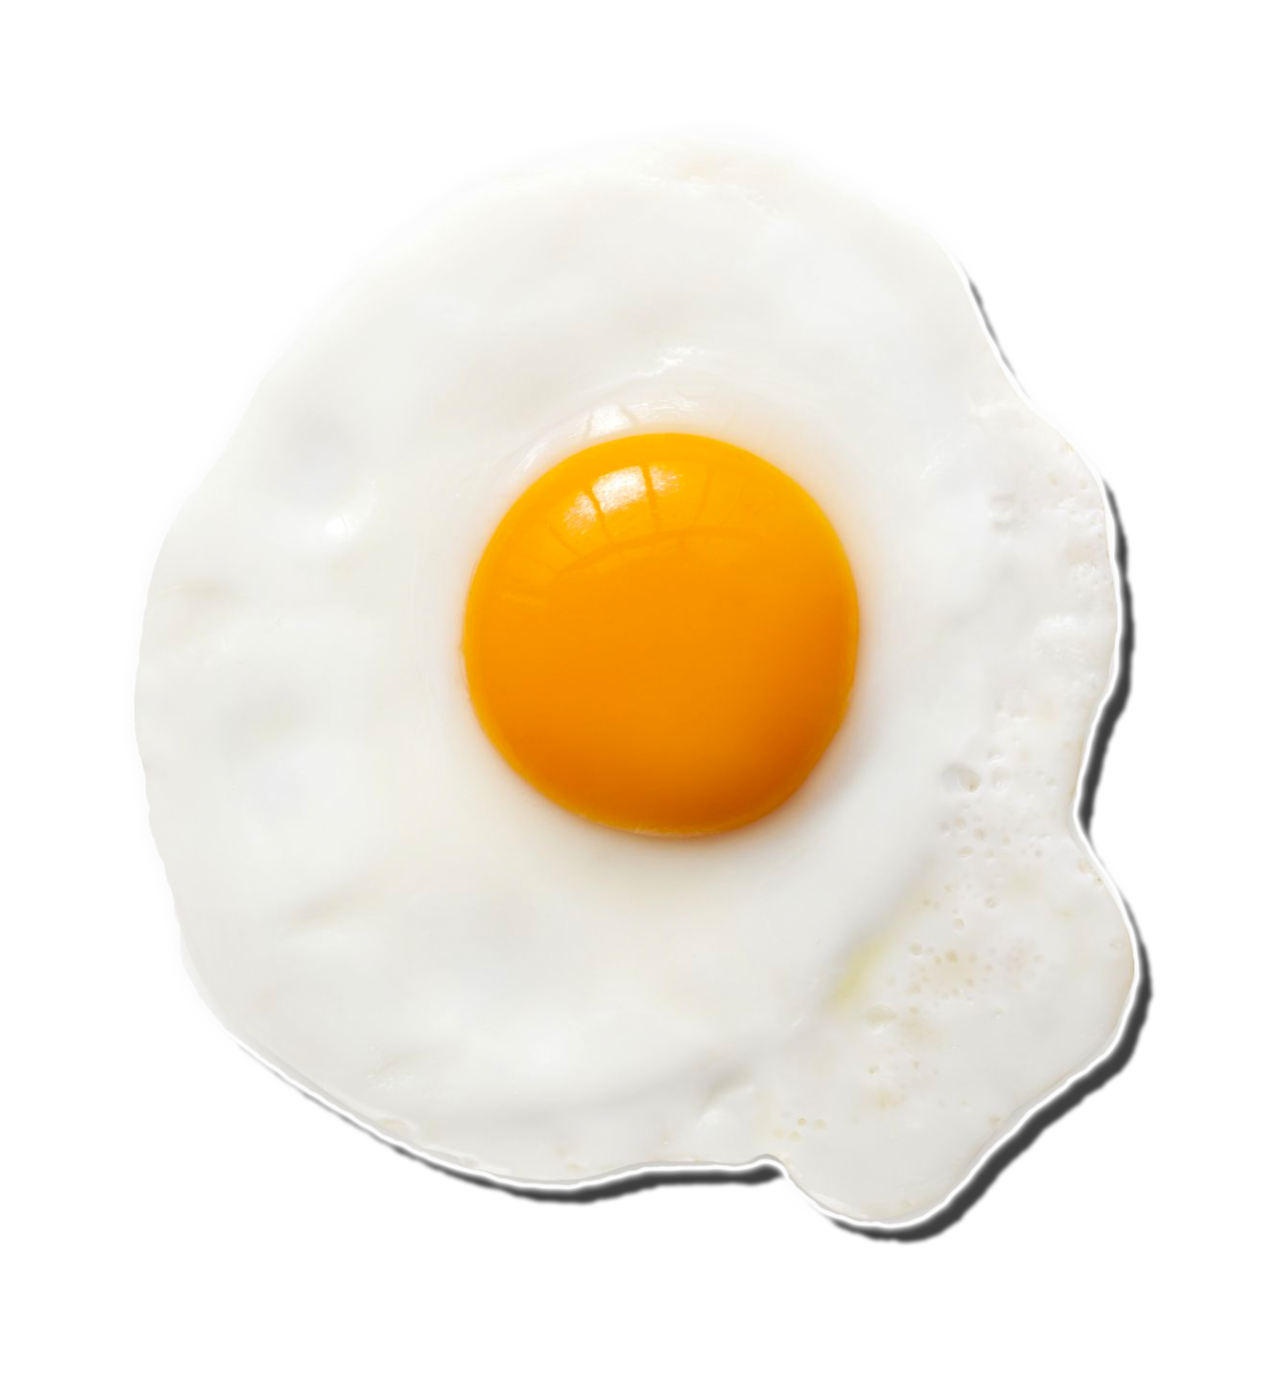 ครึ่งไข่ทอด PNG ภาพที่มีคุณภาพสูง